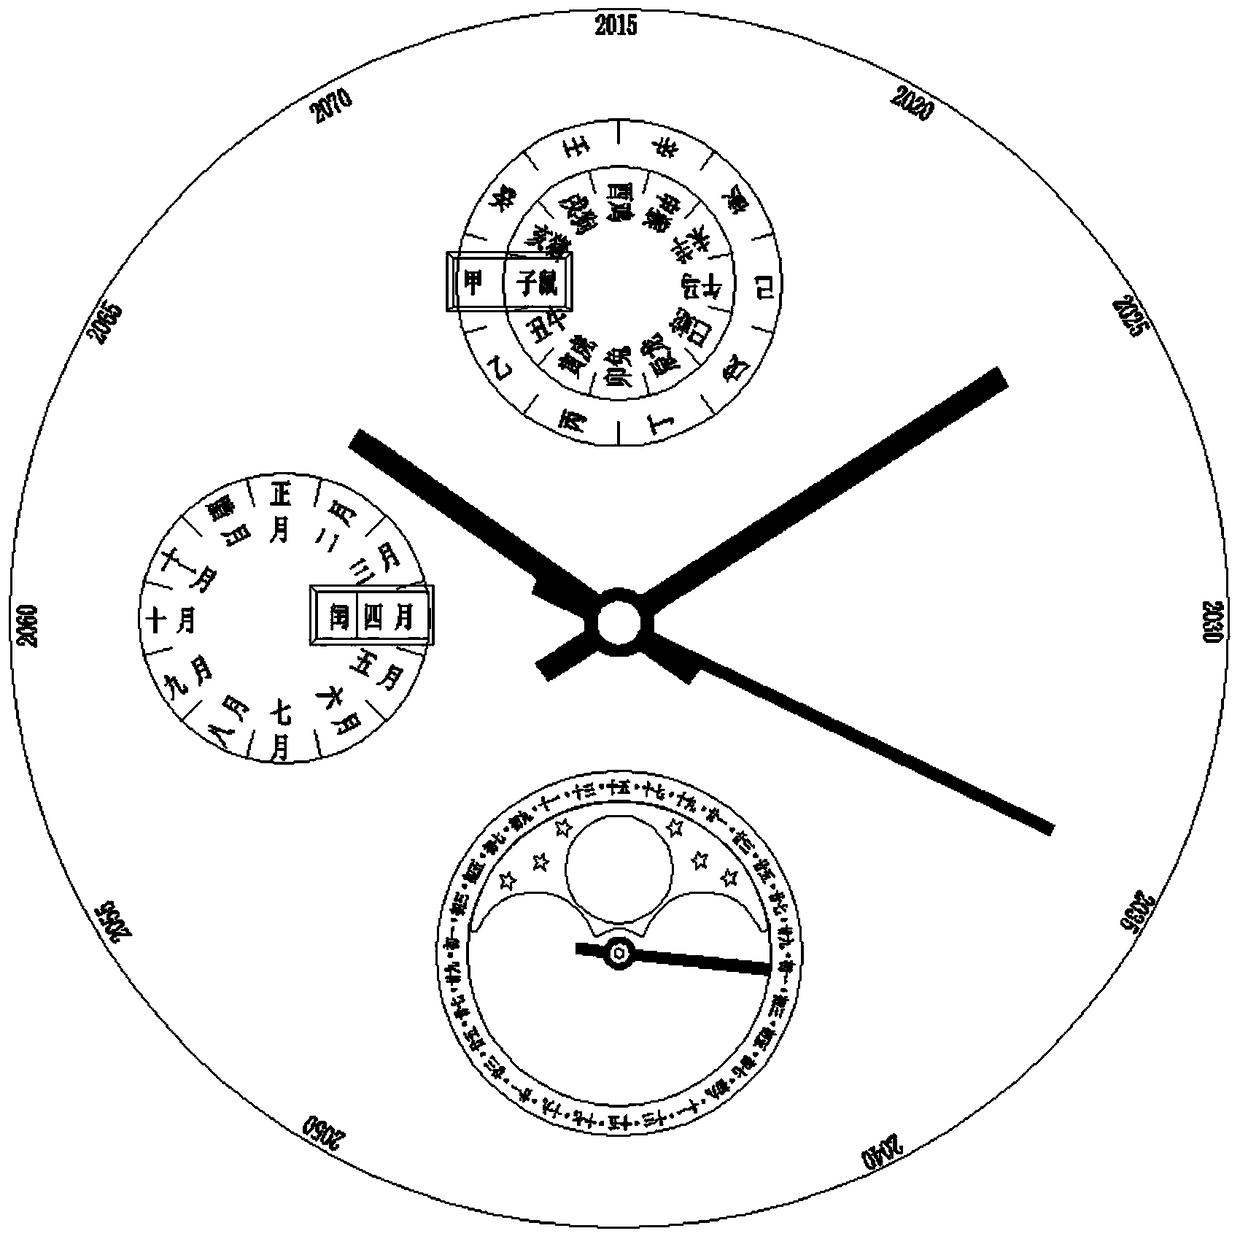 A watch with a lunar calendar indicating mechanism